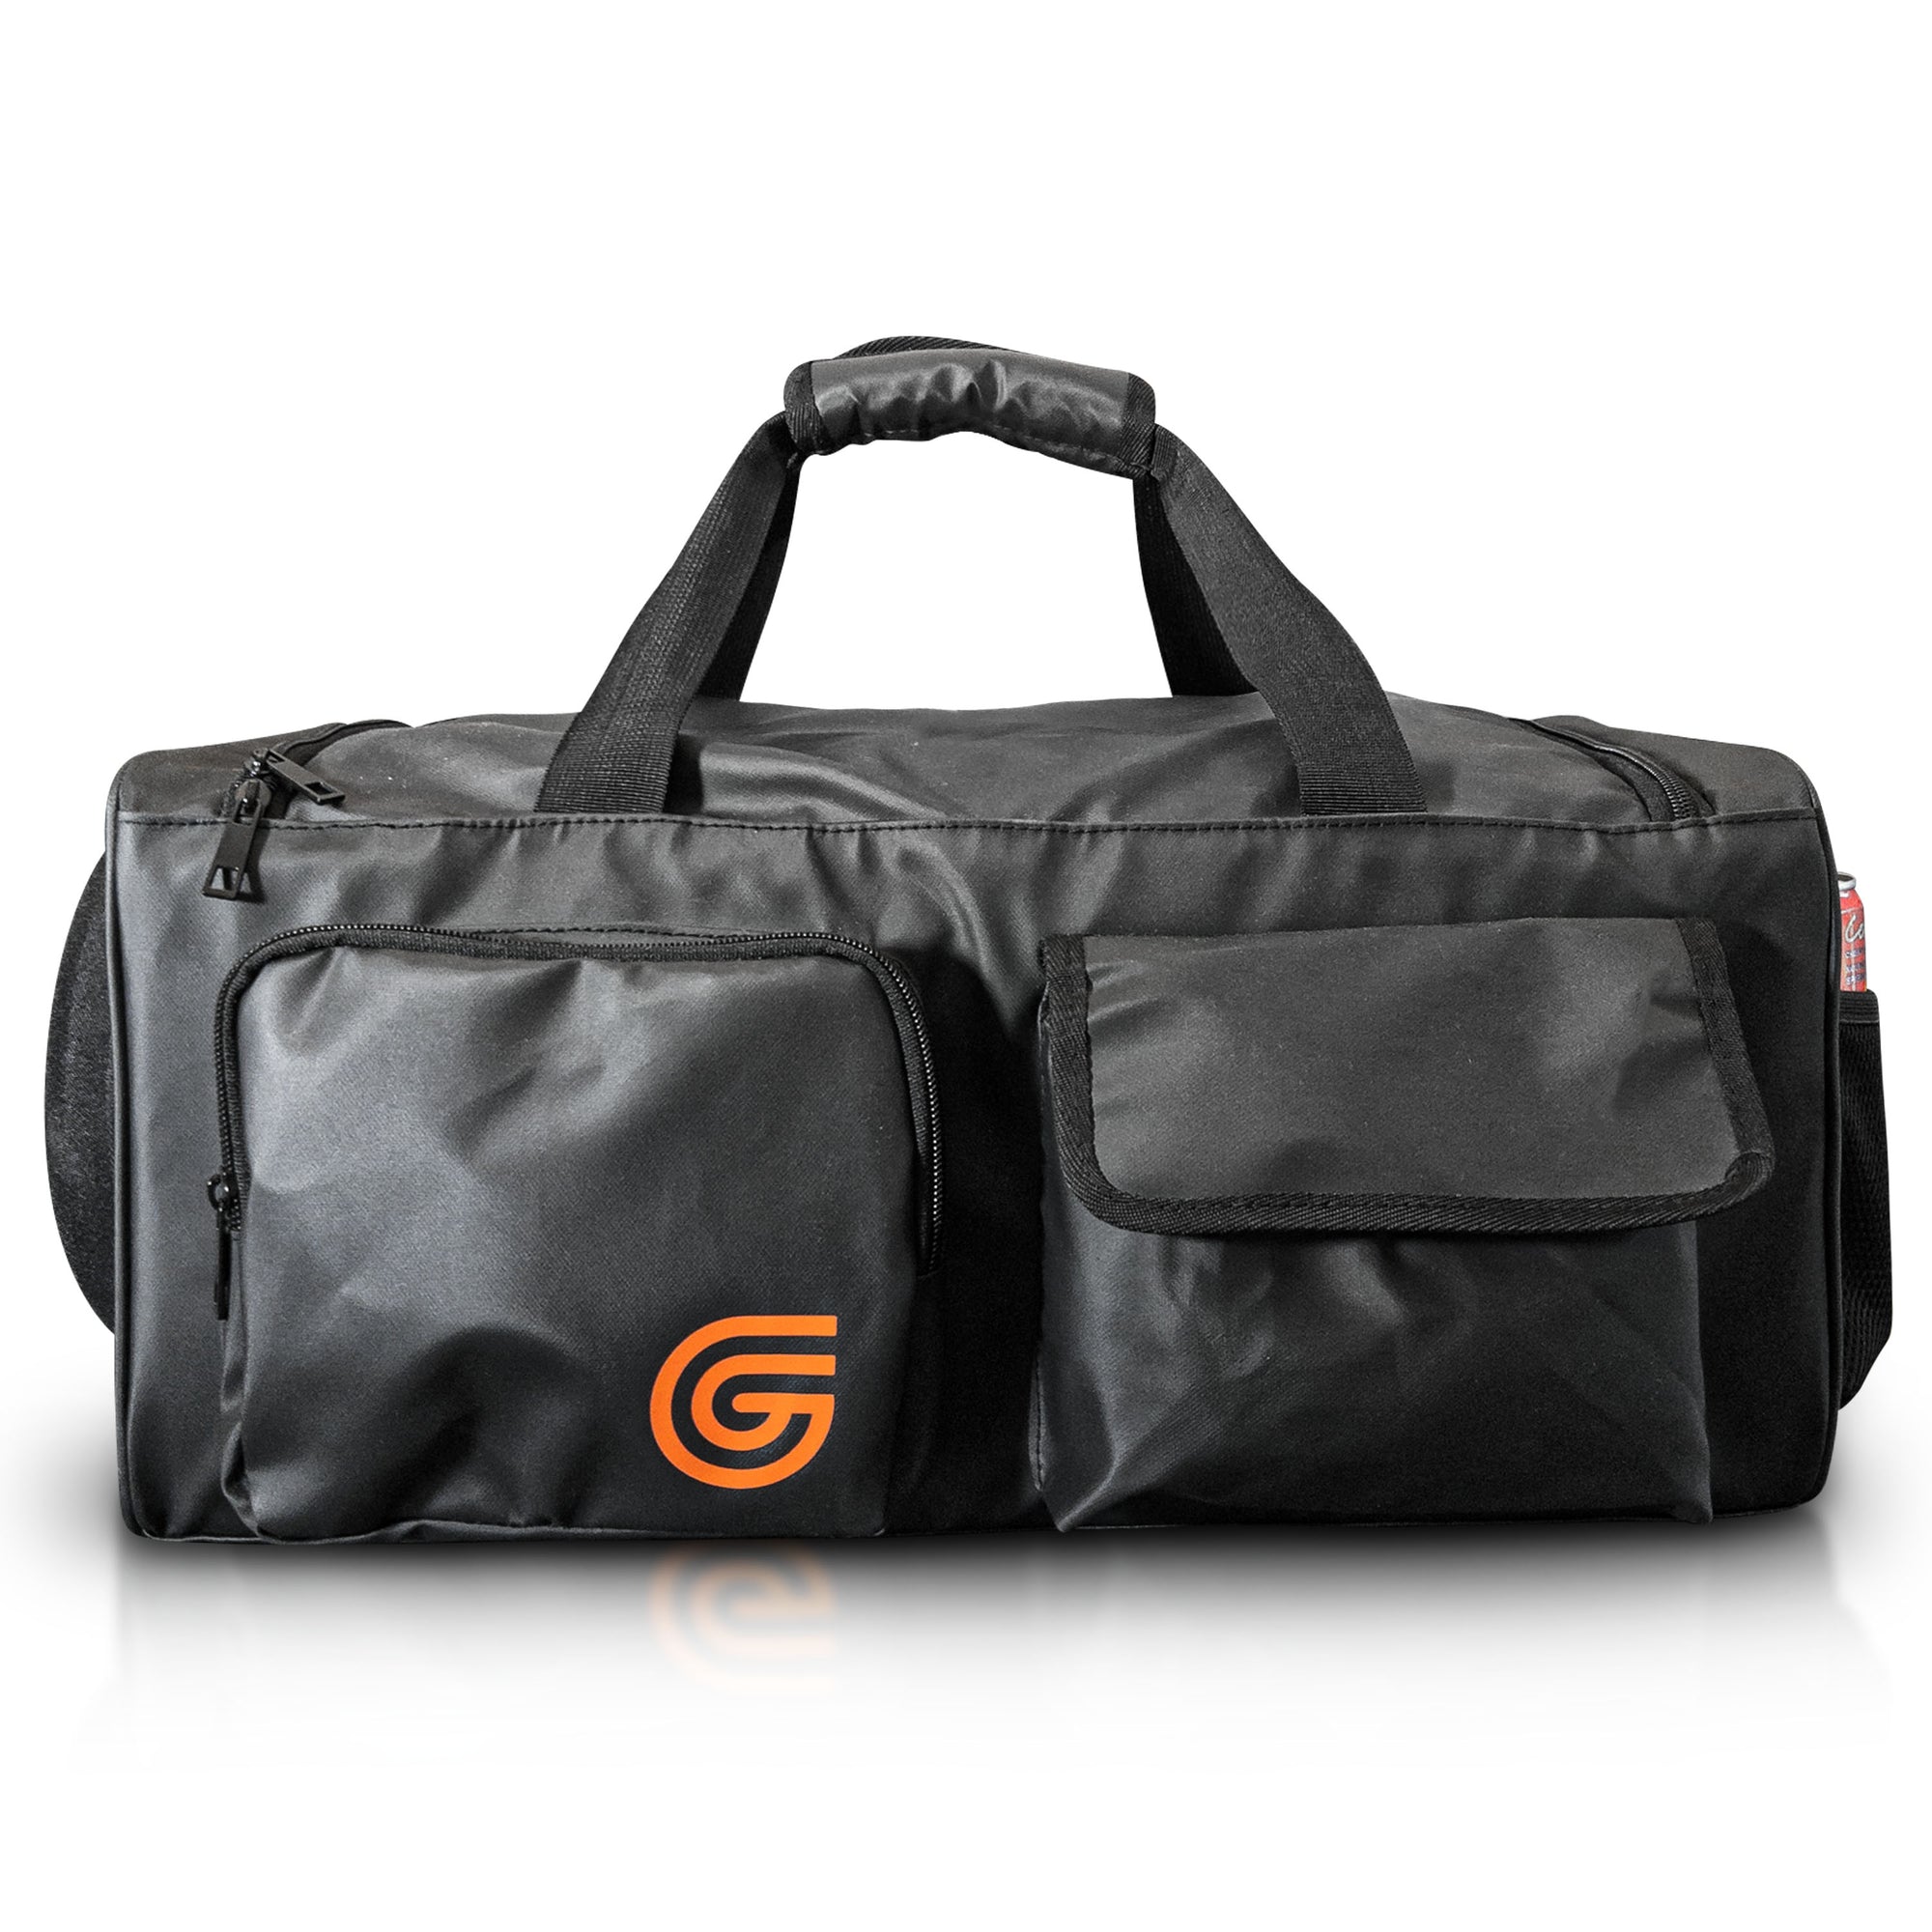 Ultimate Gaming Duffel Bag